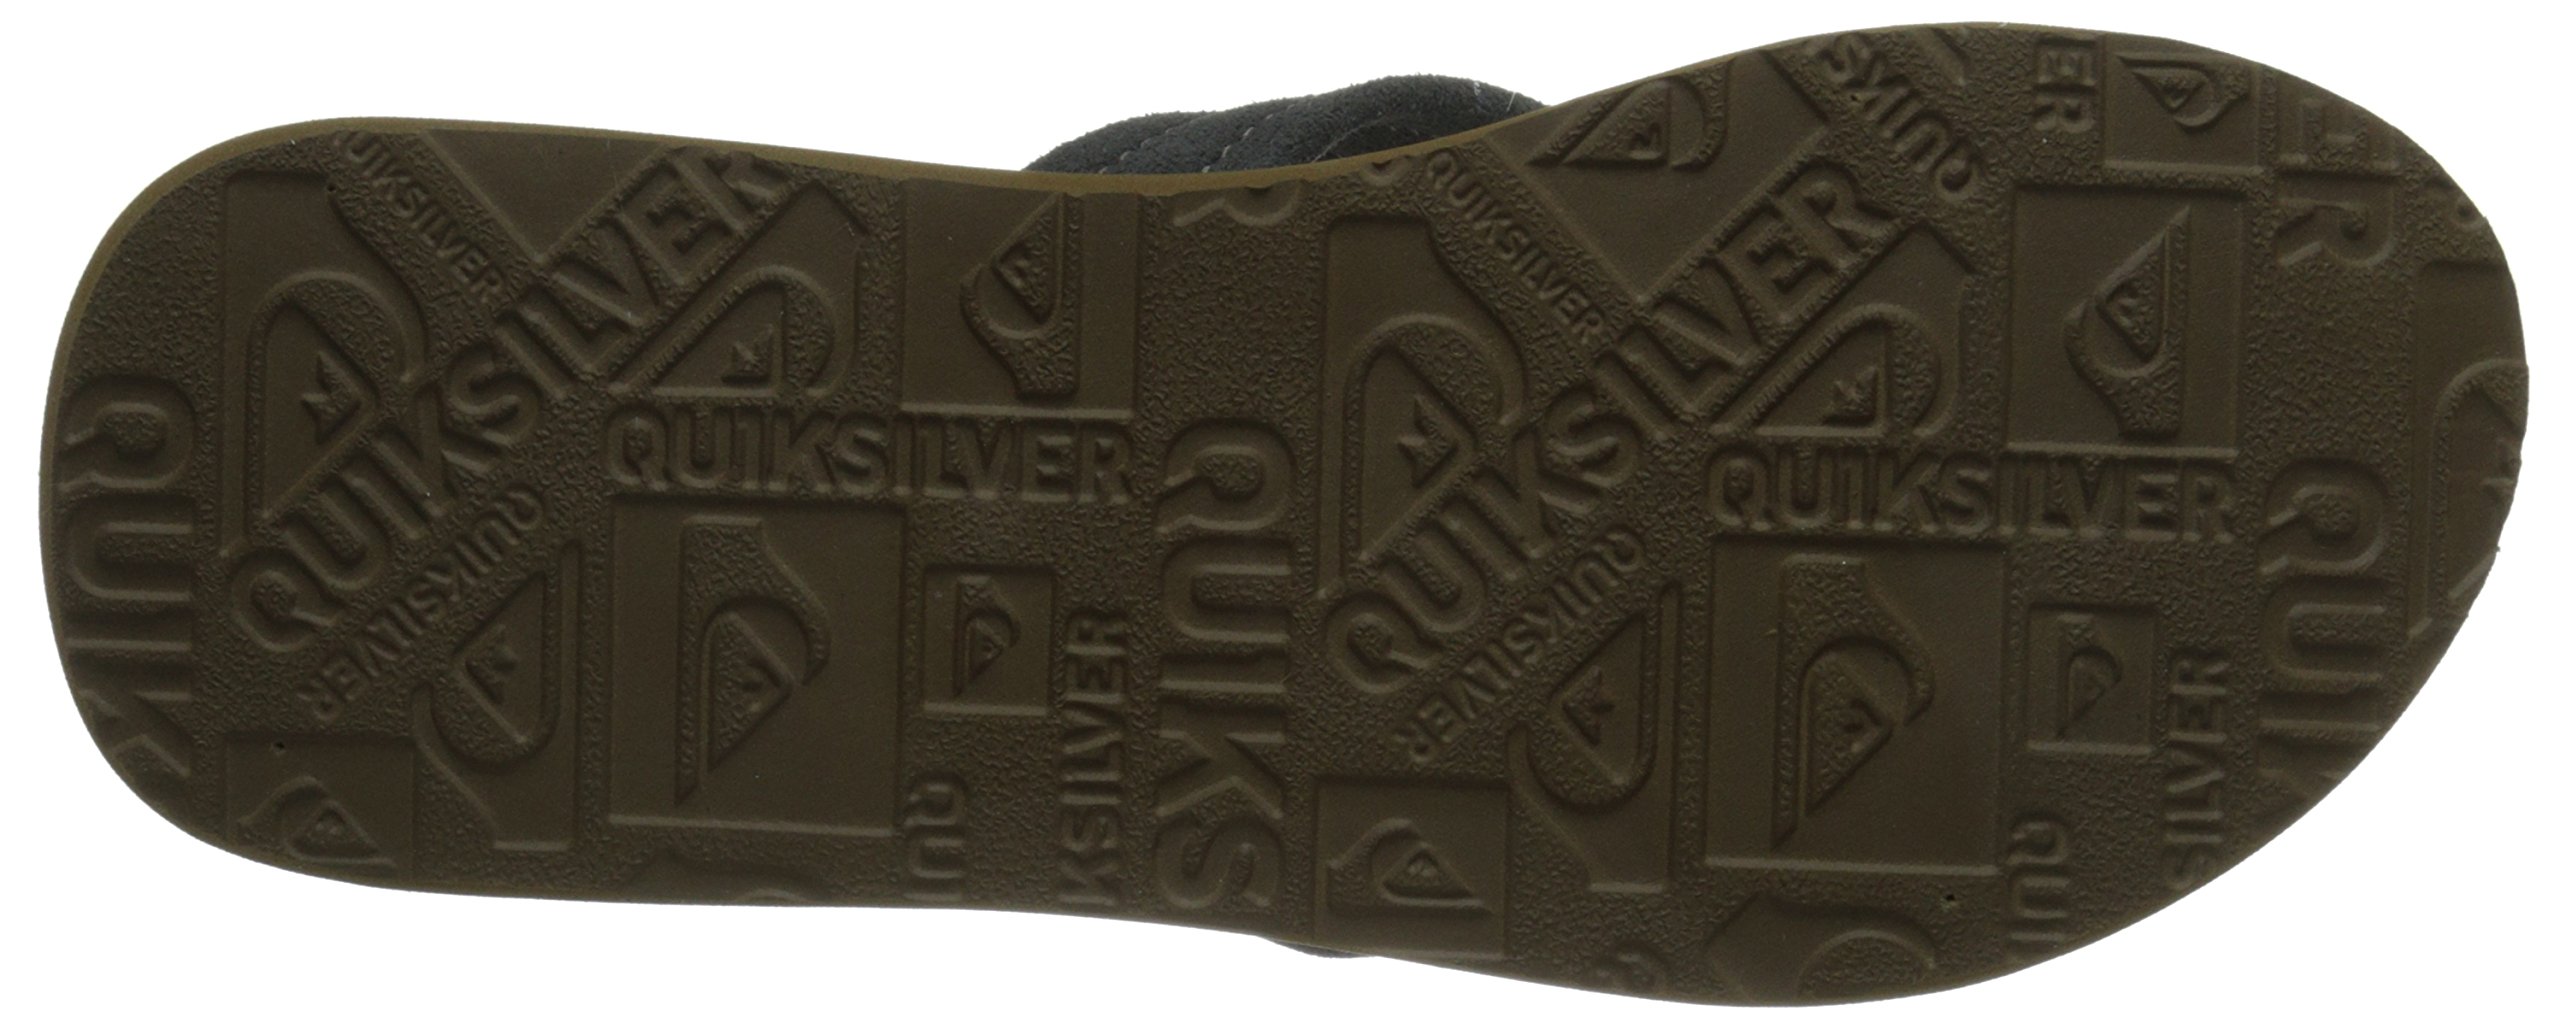 Quiksilver Men's Carver Suede 3 Point Flip Flop Athletic Sandal